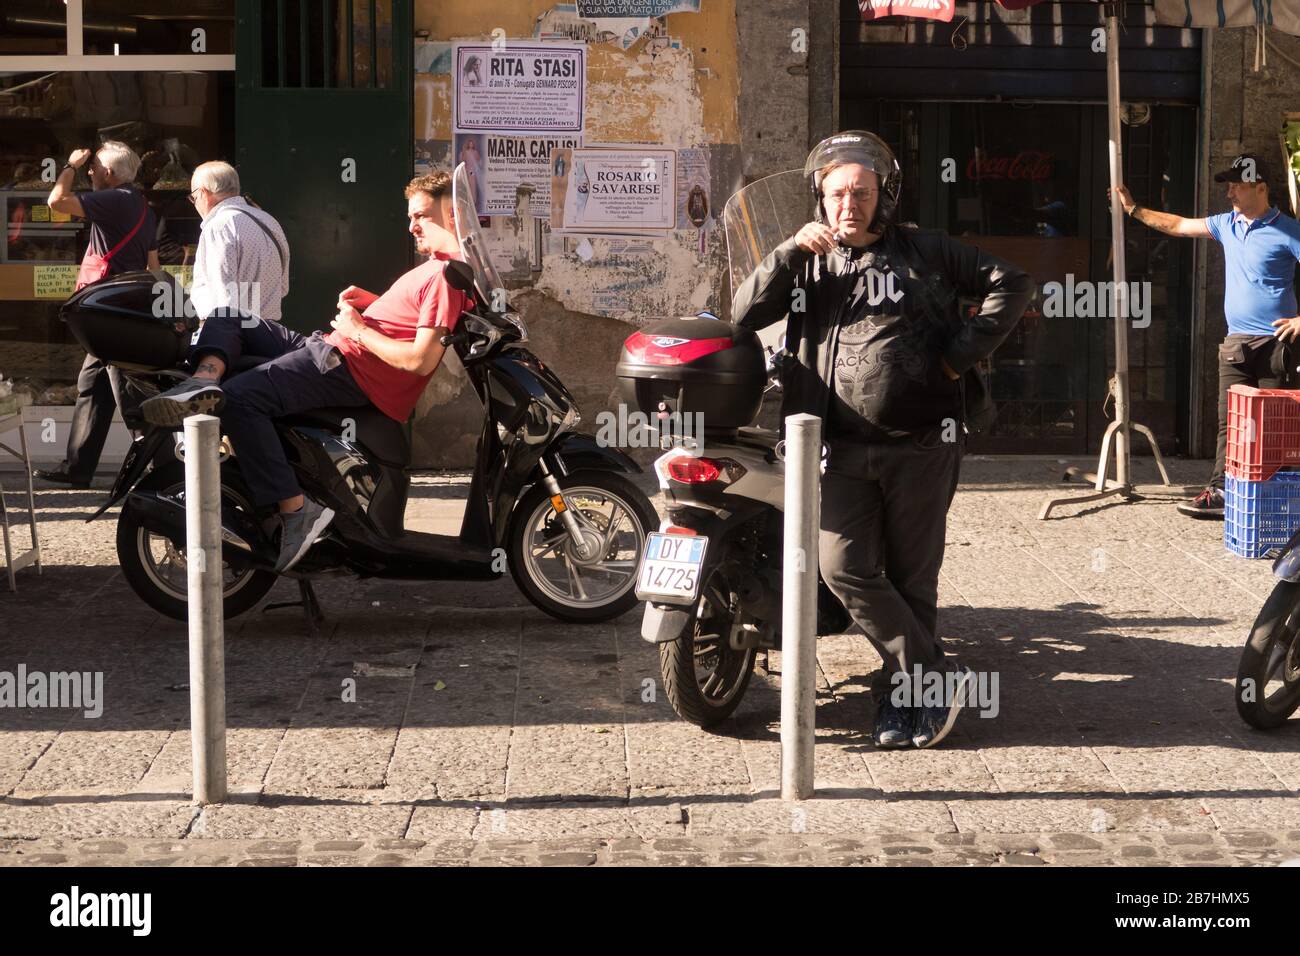 Una scena di persone che si rilassano al sole in una strada di Napoli, Italia. Foto Stock